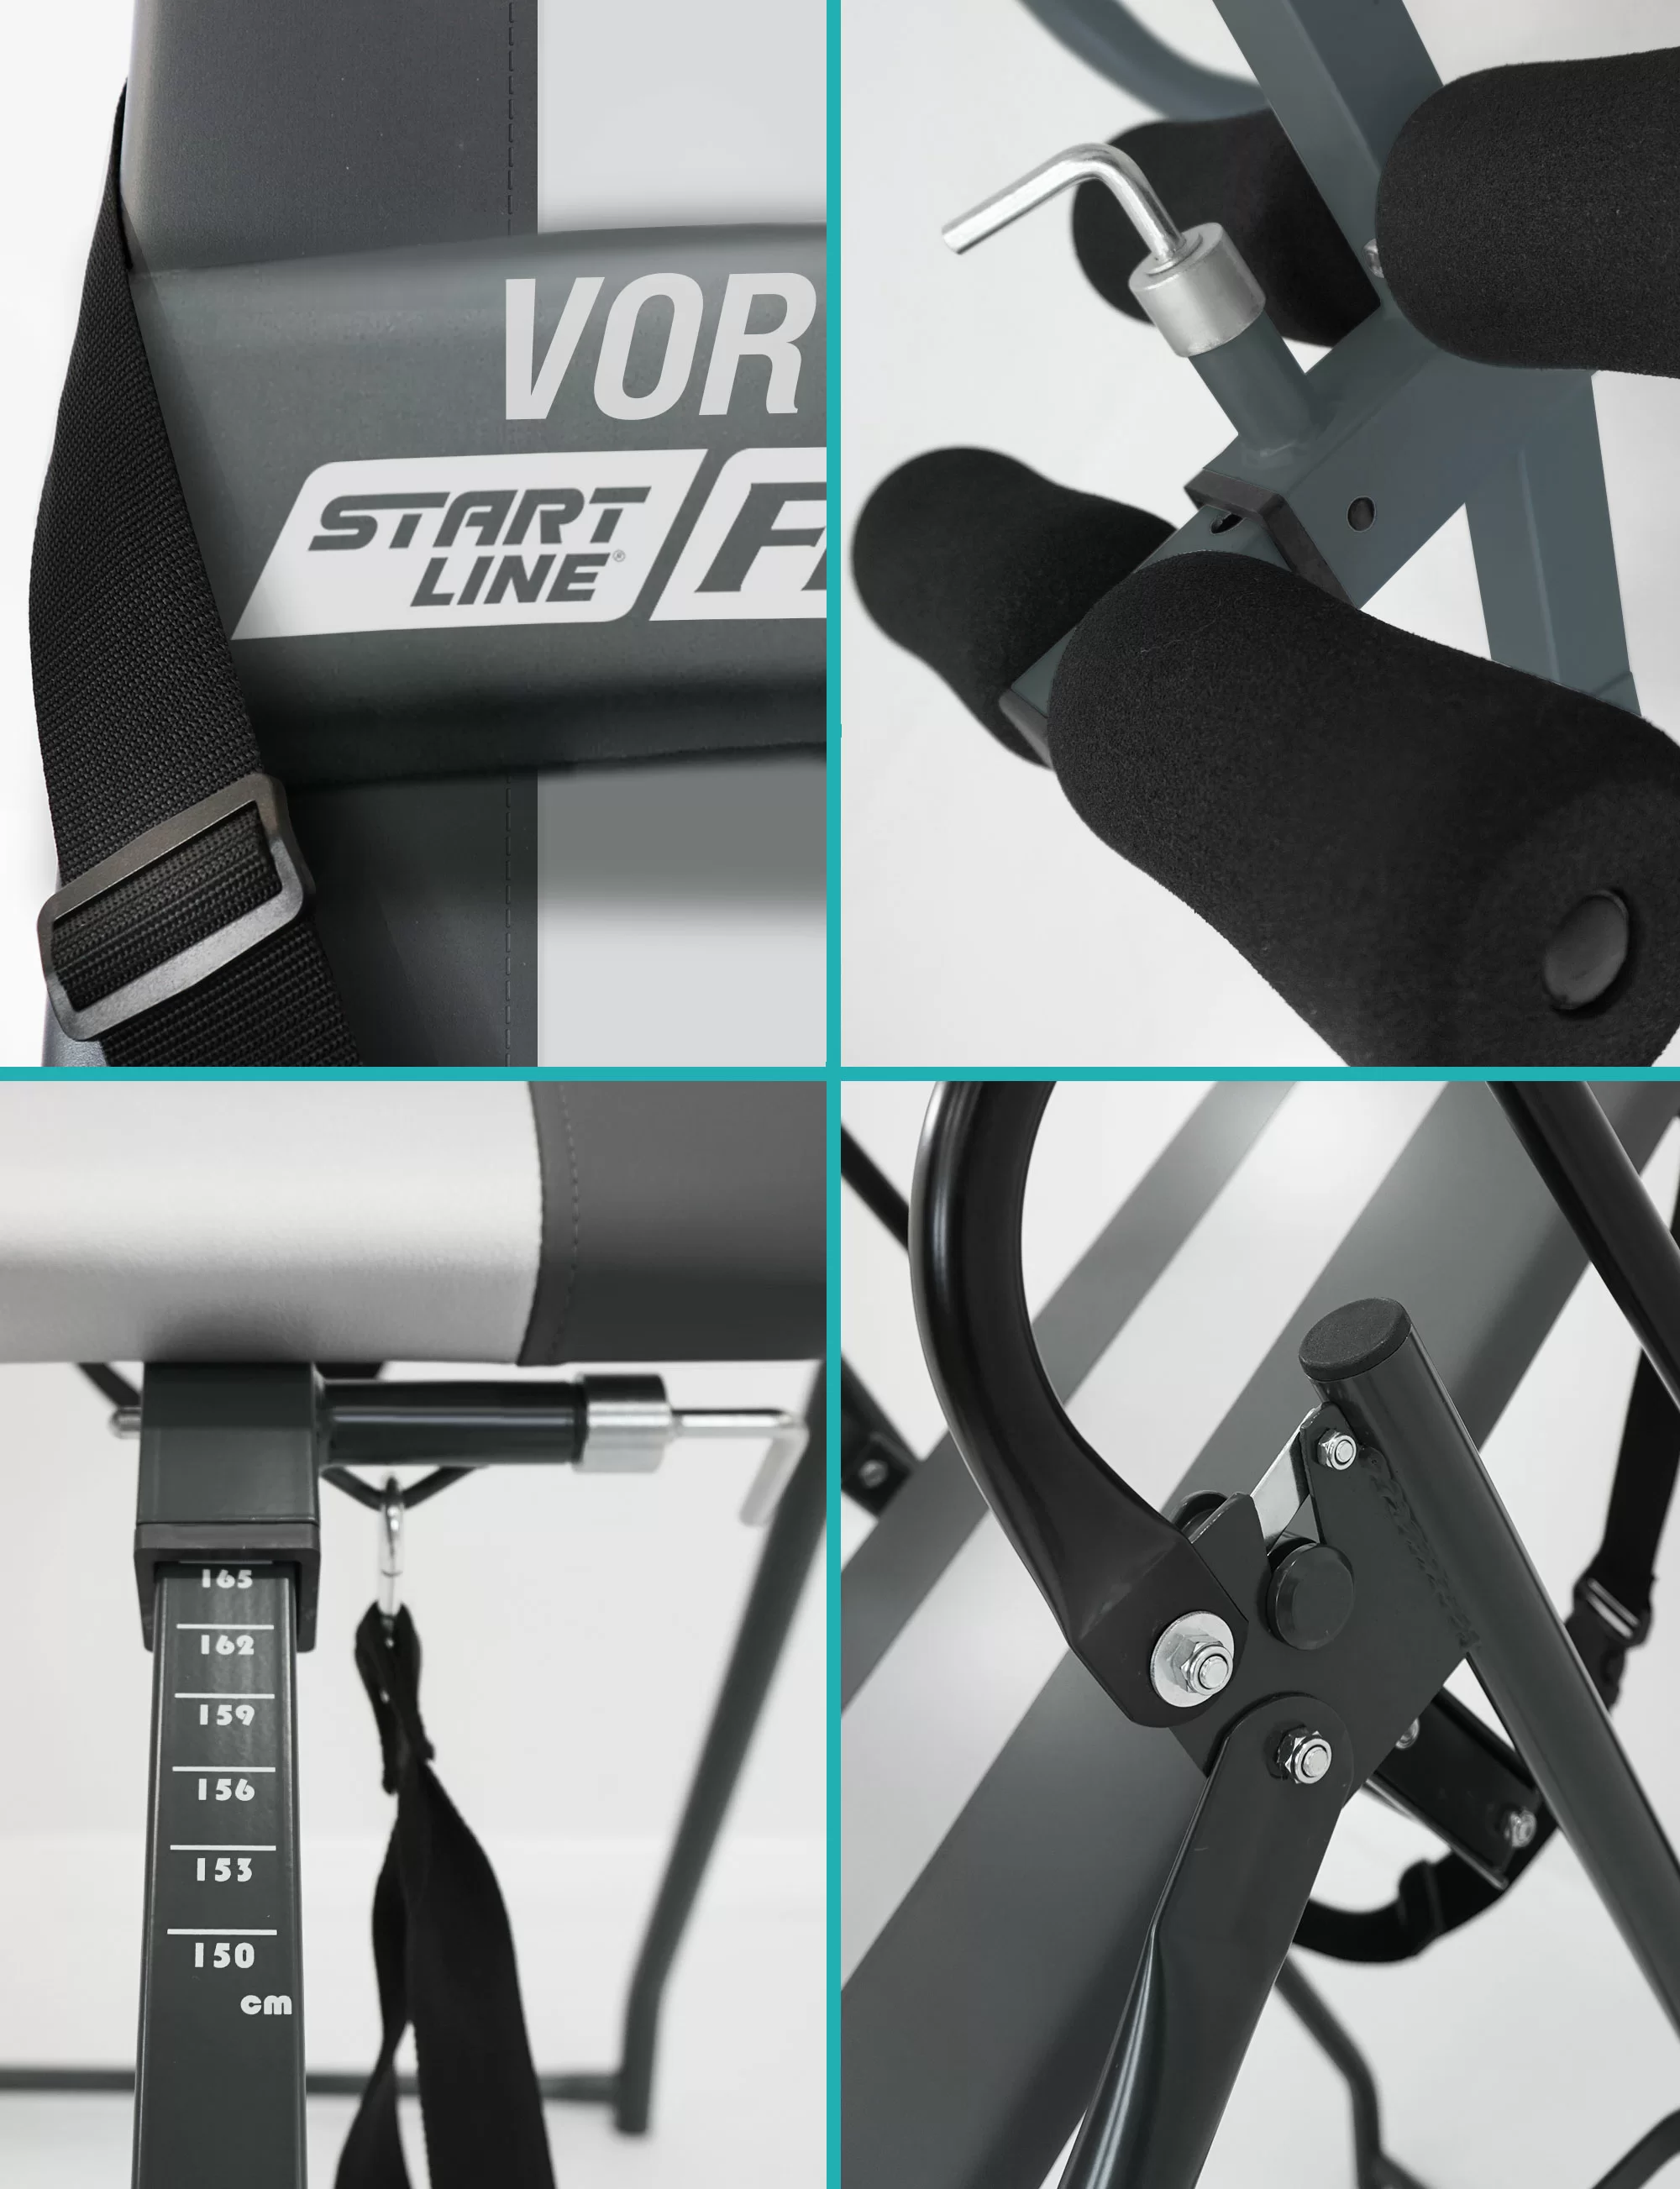 Реальное фото Инверсионный стол Start Line Vortex серо-серебристый с подушкой SLFIT03-GS от магазина СпортЕВ